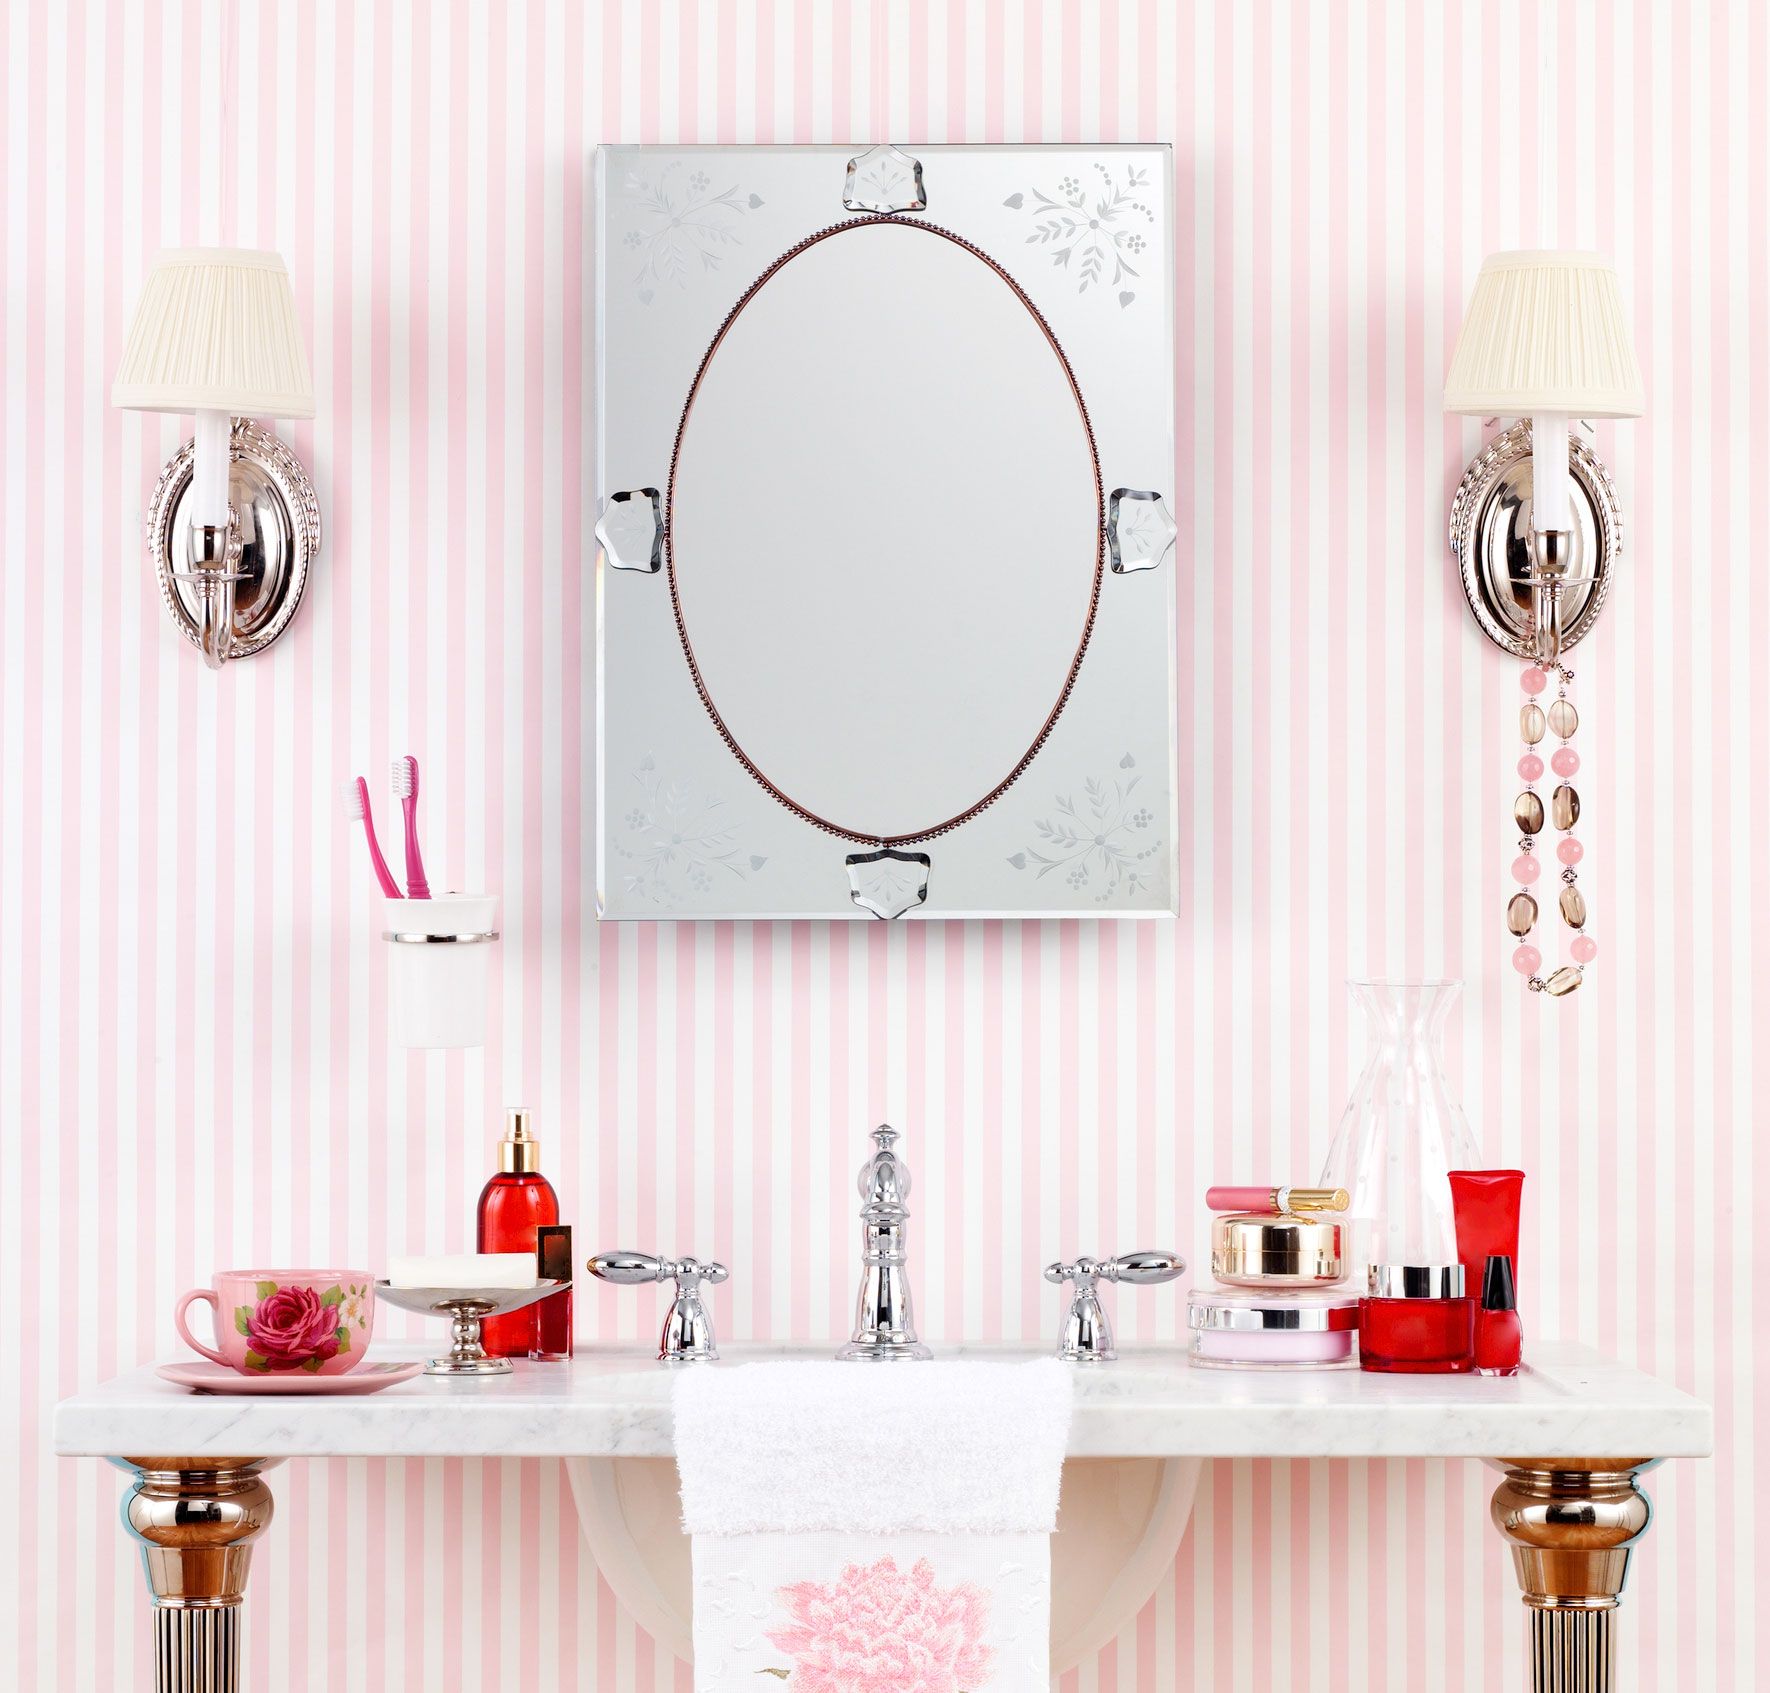 9 idej za kopalnico Backsplash, ki dokazujejo, da je kopalnica lahko najlepša soba v hiši